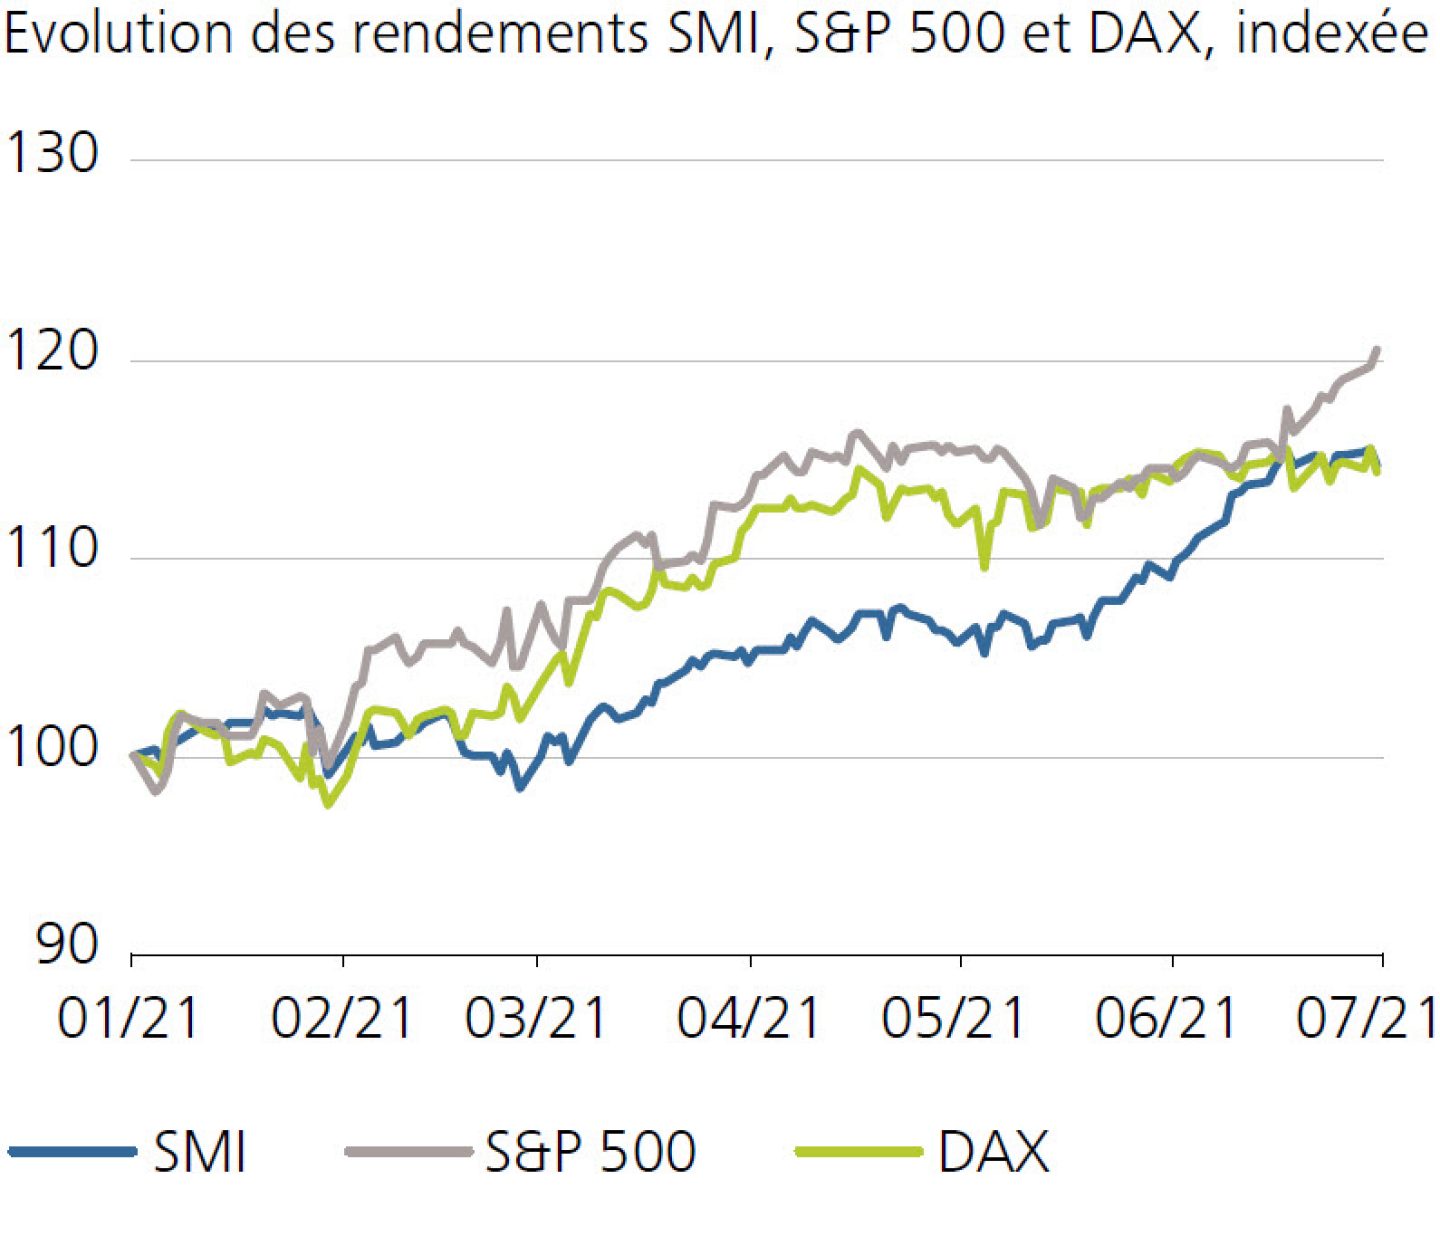 Evolution des rendements SMI, S&P 500 et DAX, indexée